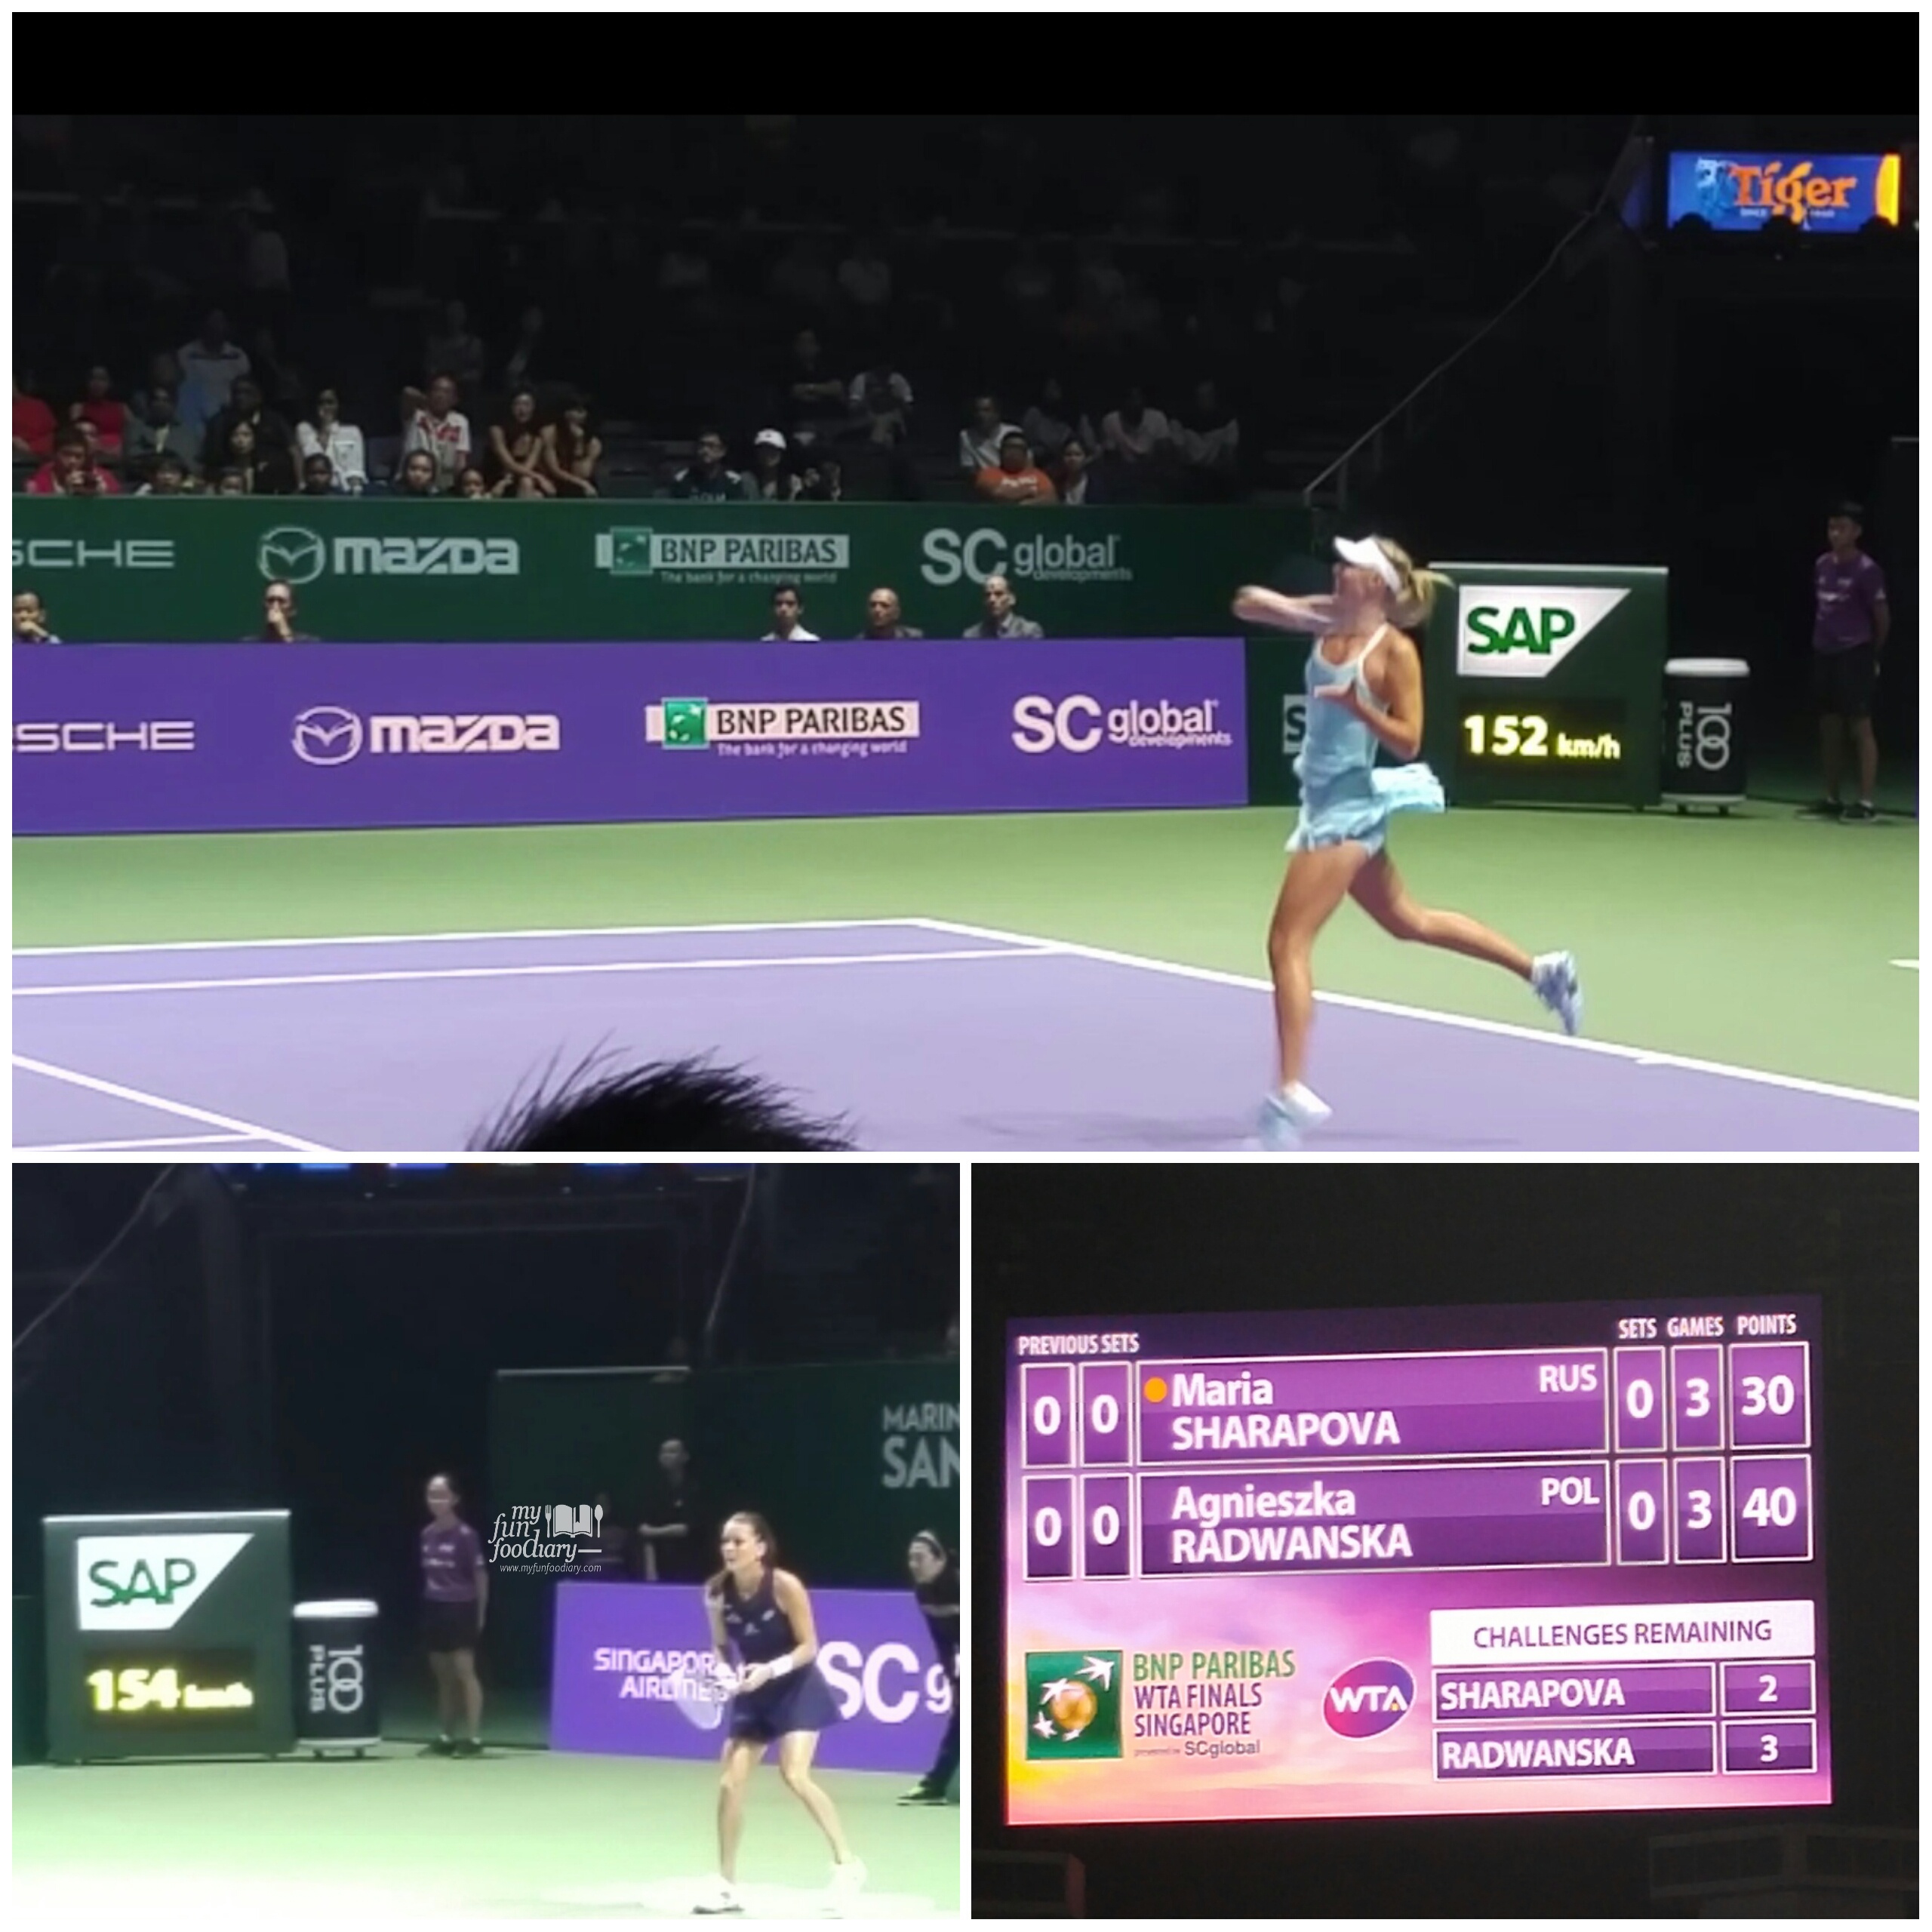 Maria Sharapova vs Agniezska Radwanska by Myfunfoodiary